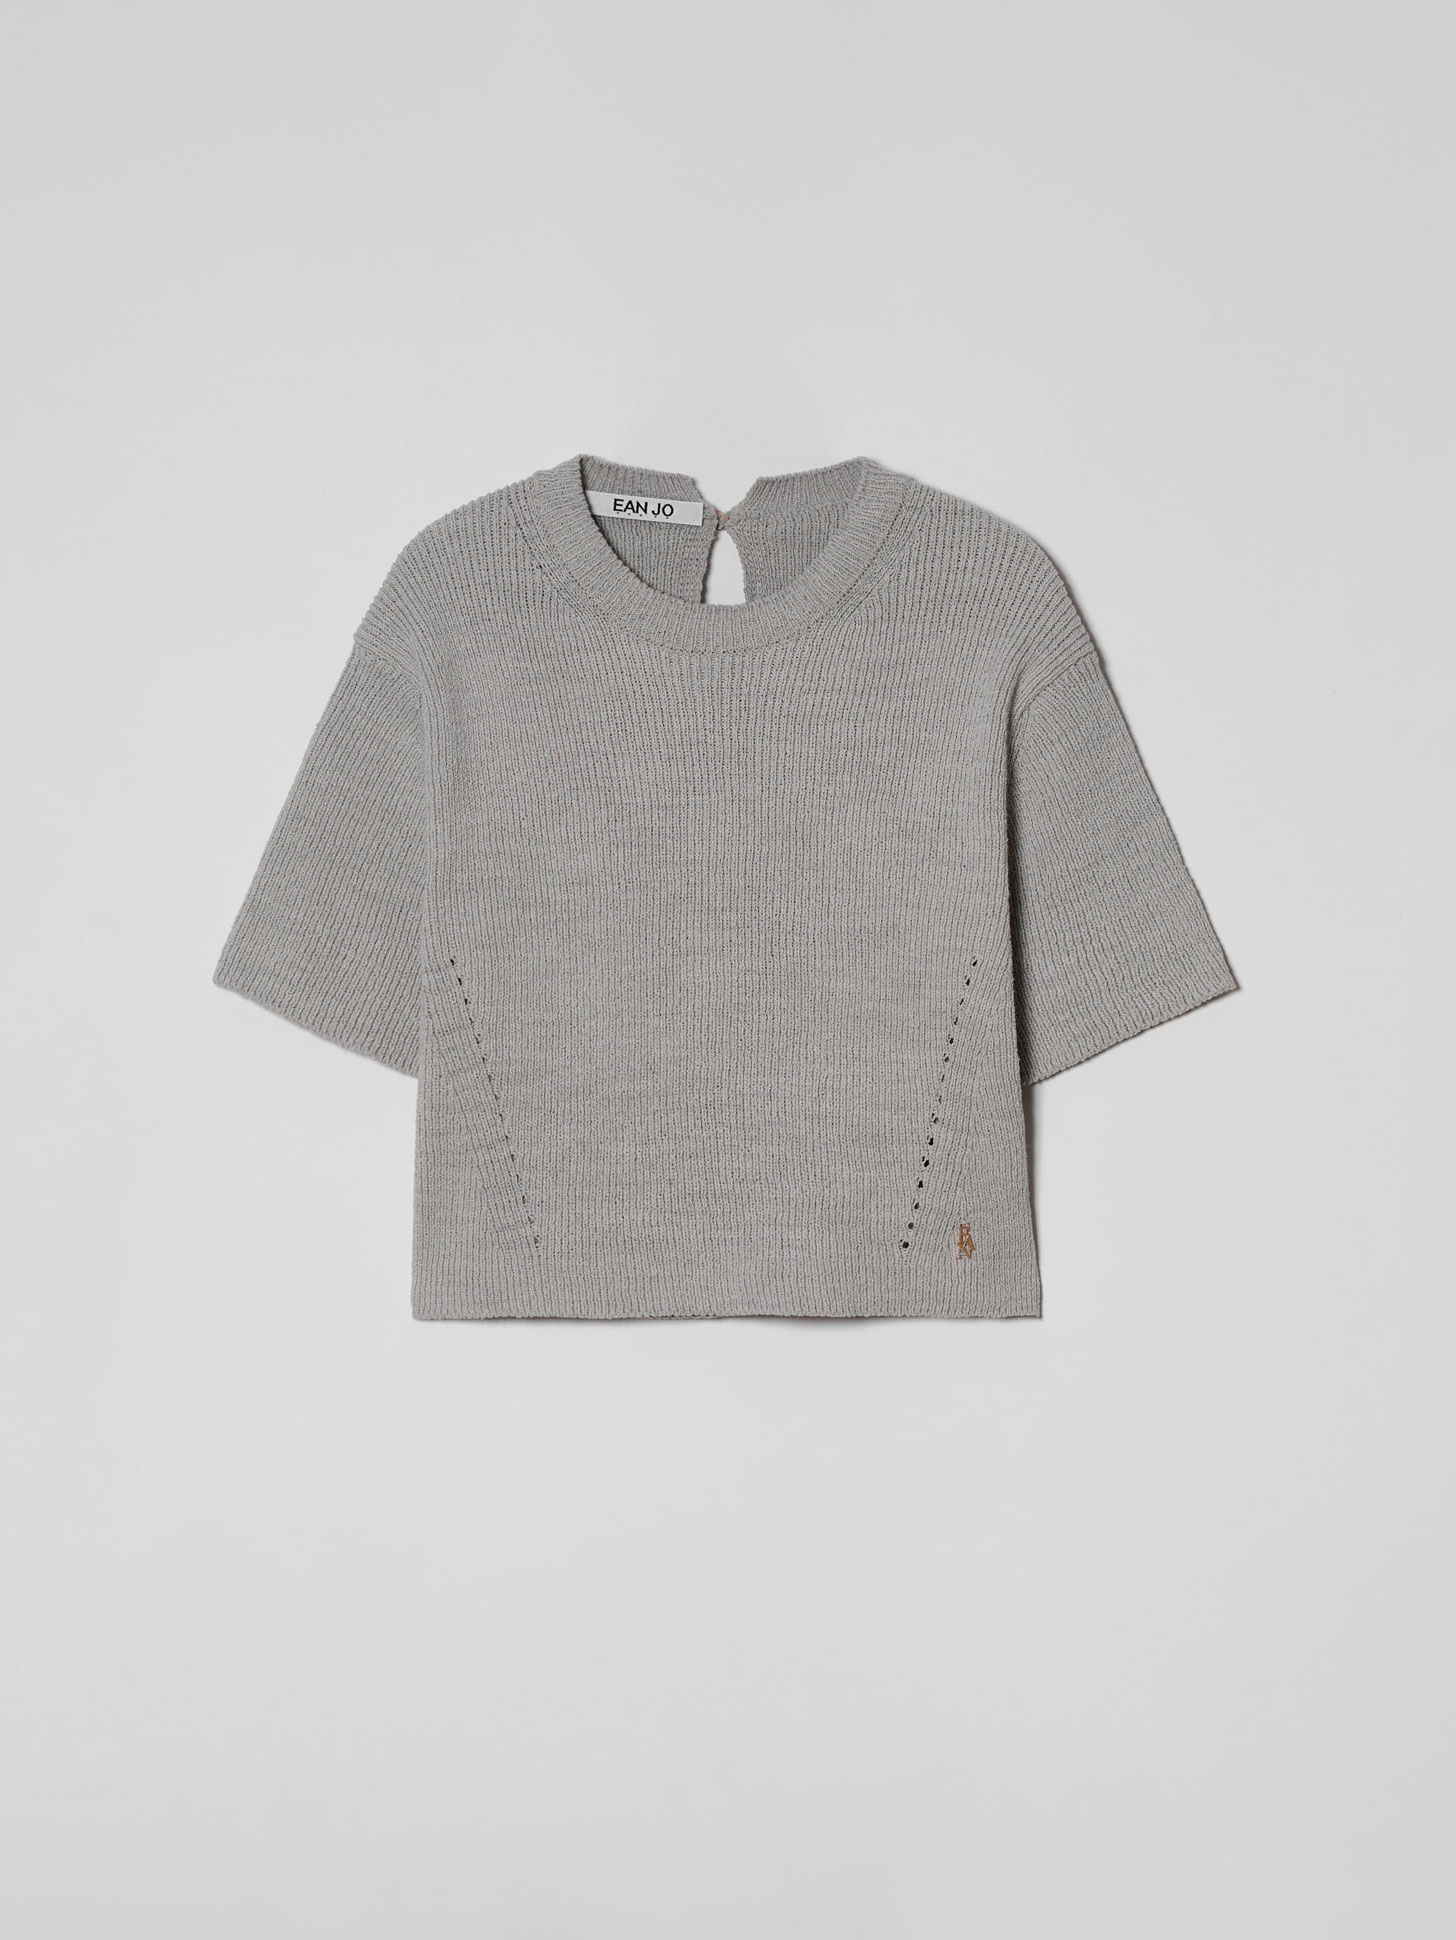 Half Sleeve Knit Top - Natural Grey